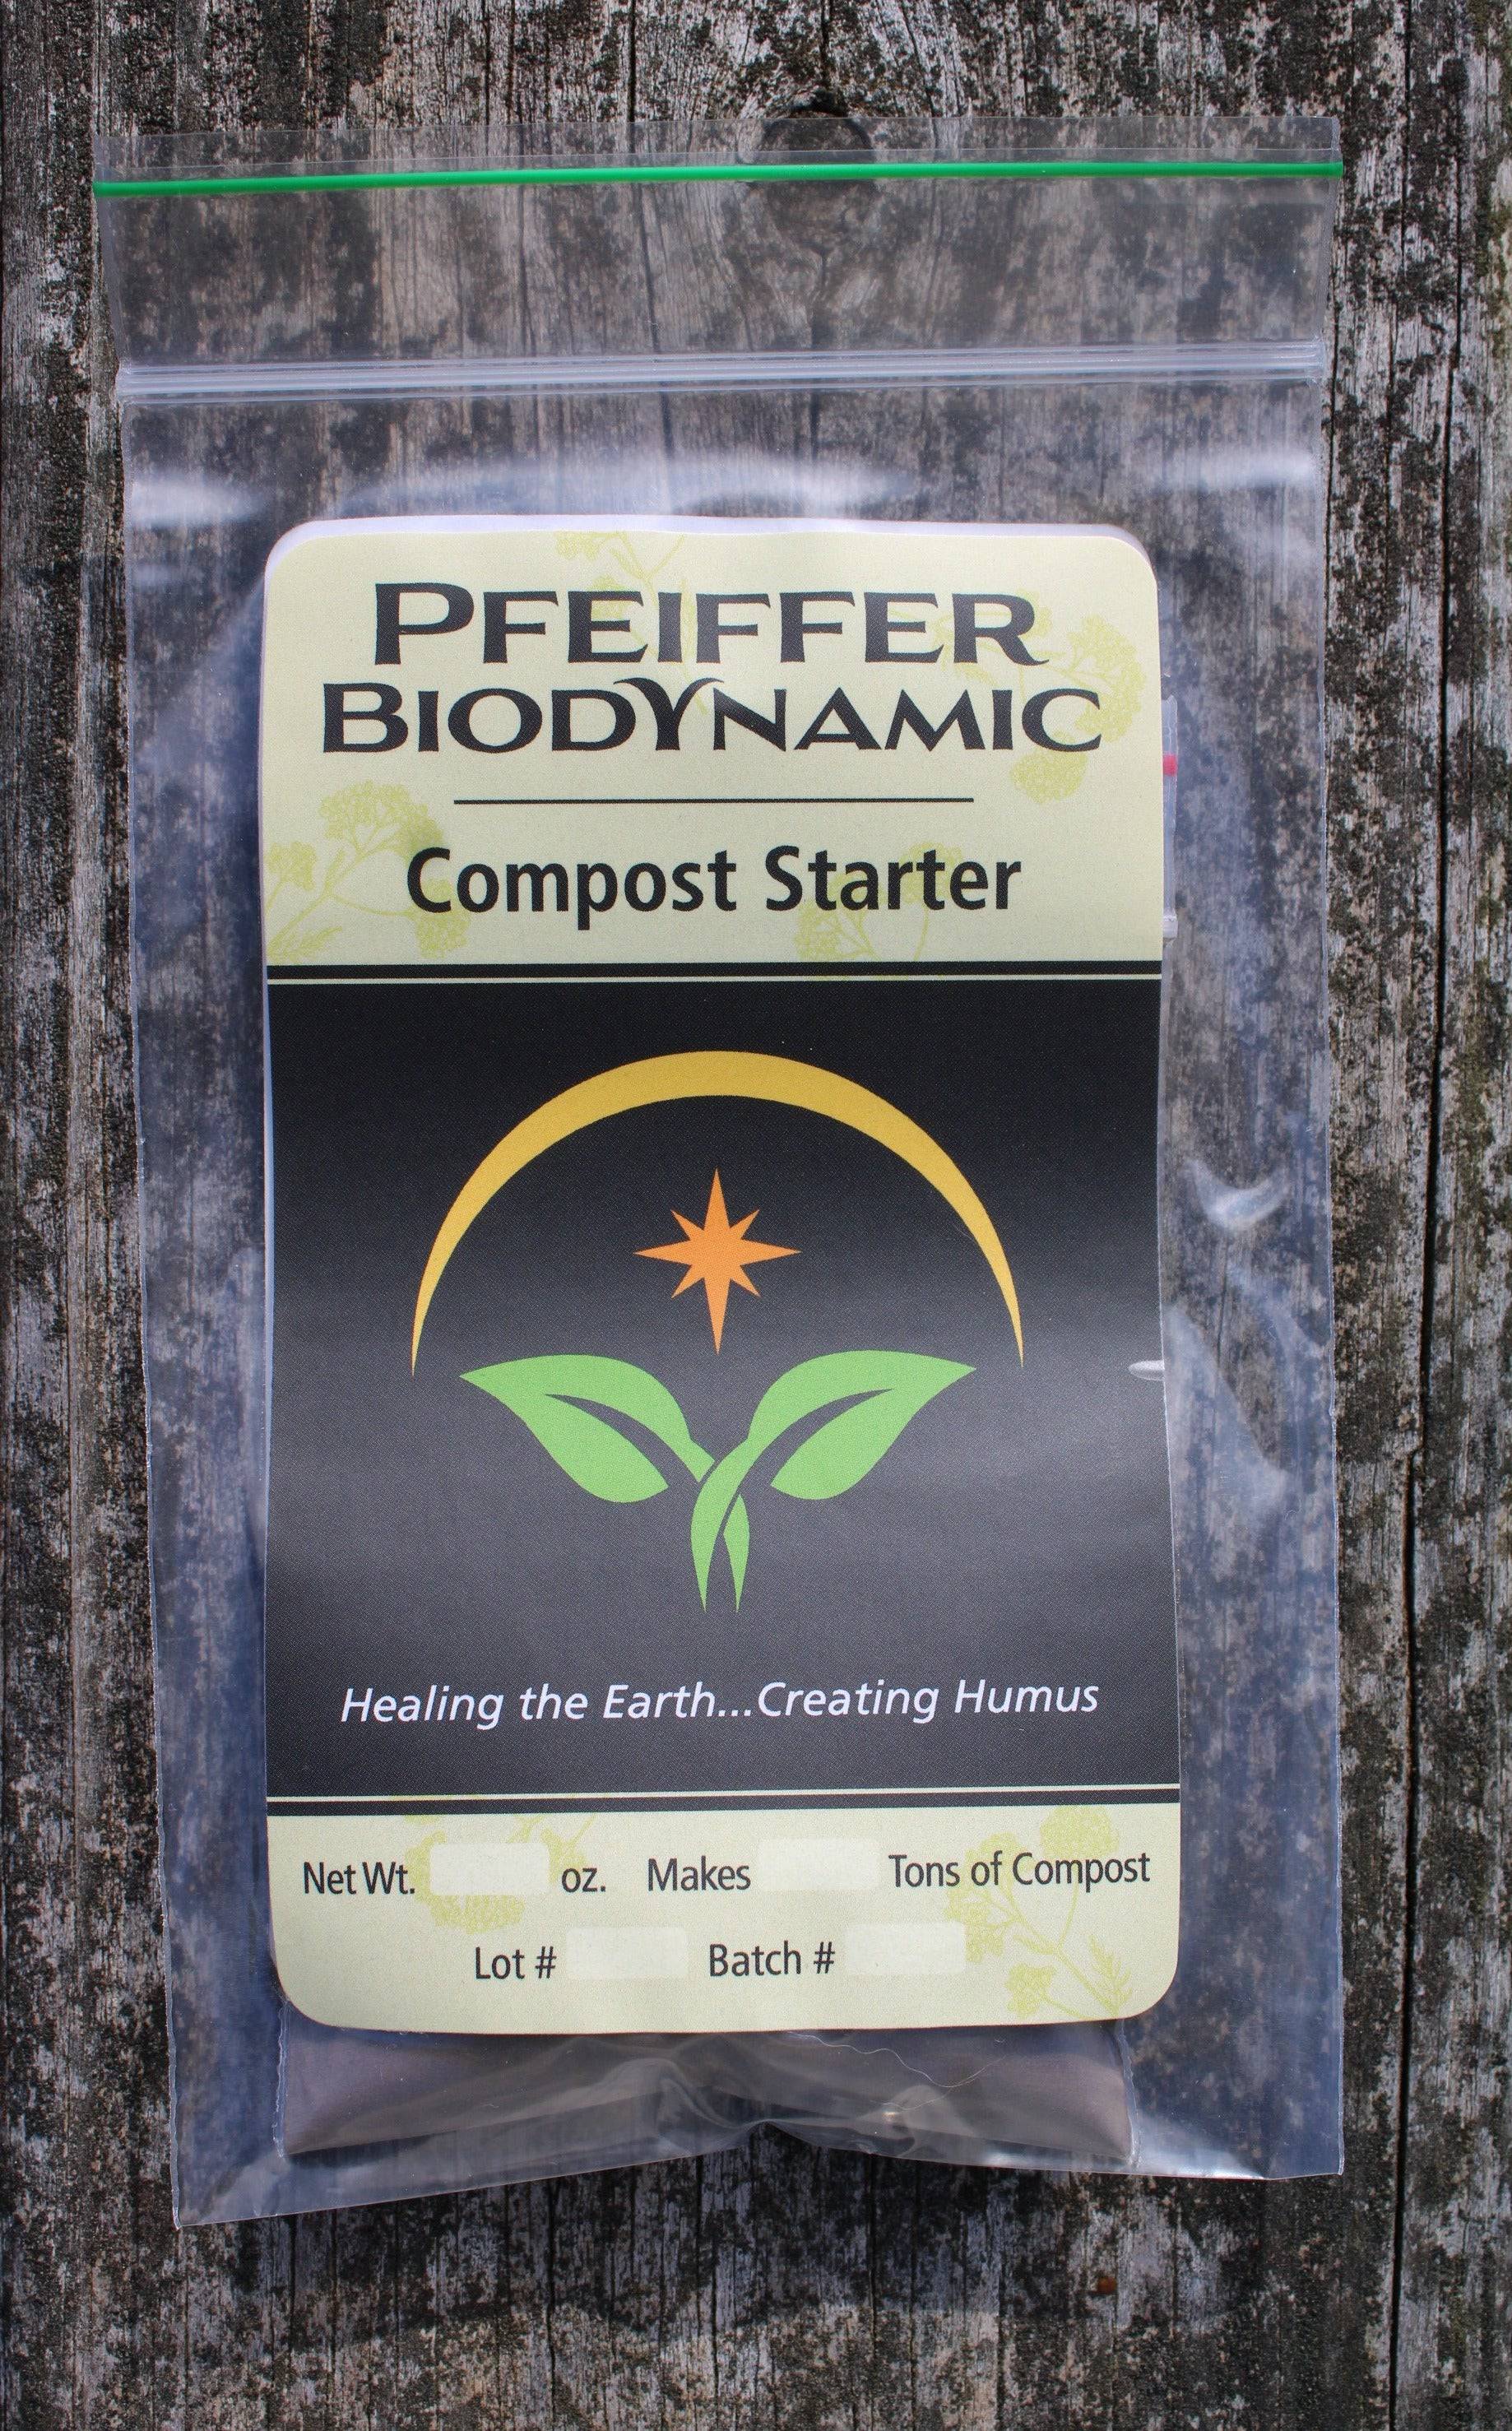 Biodynamic Pfeiffer™ Compost Starter - The Josephine Porter Institute